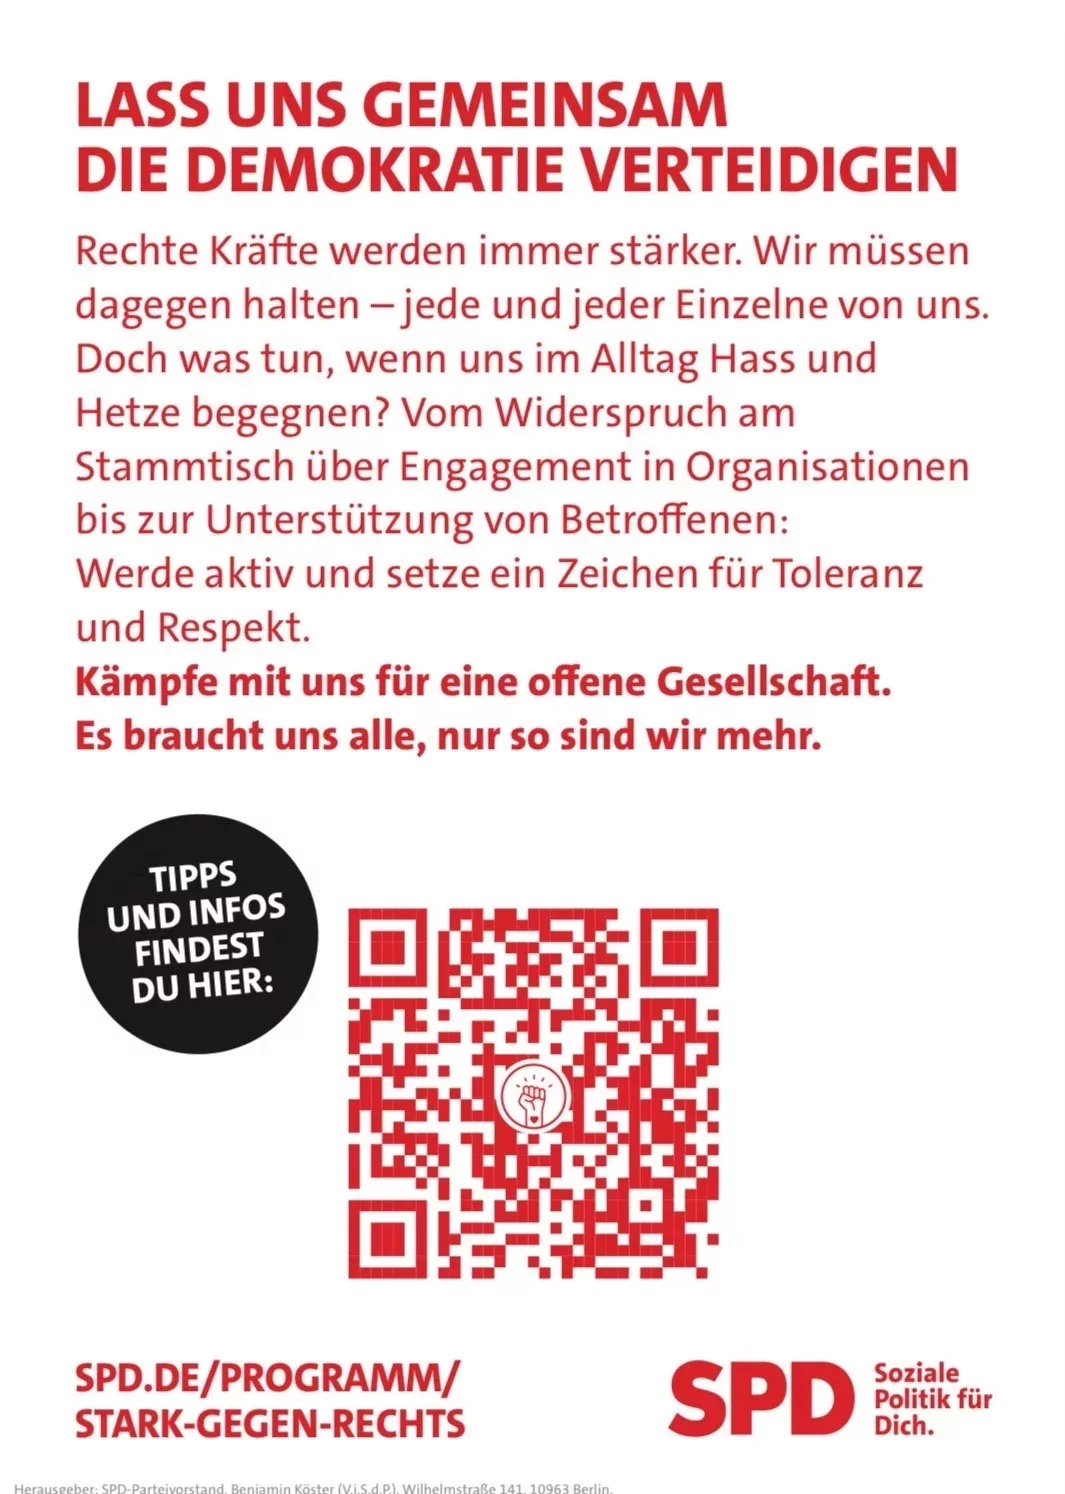 Rückseite der Postkarte mit SPD Kontaktangaben.